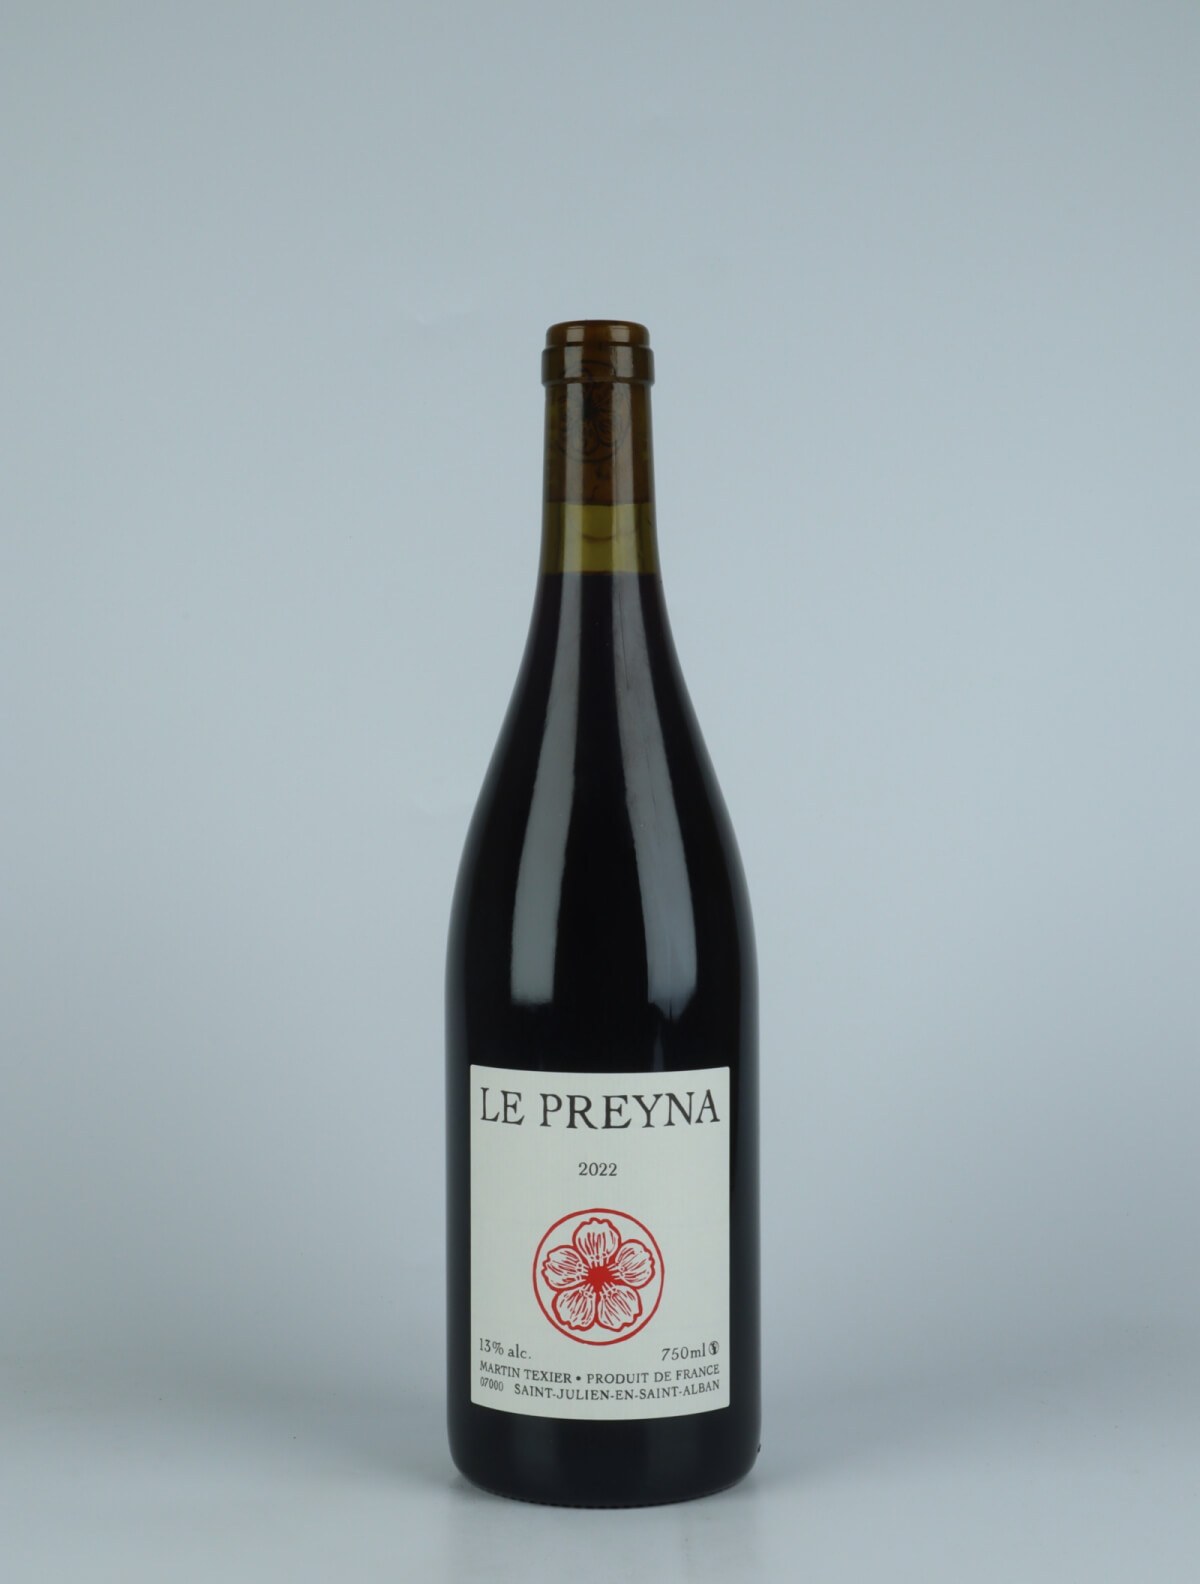 En flaske 2022 Le Preyna Rødvin fra Martin Texier, Rhône i Frankrig